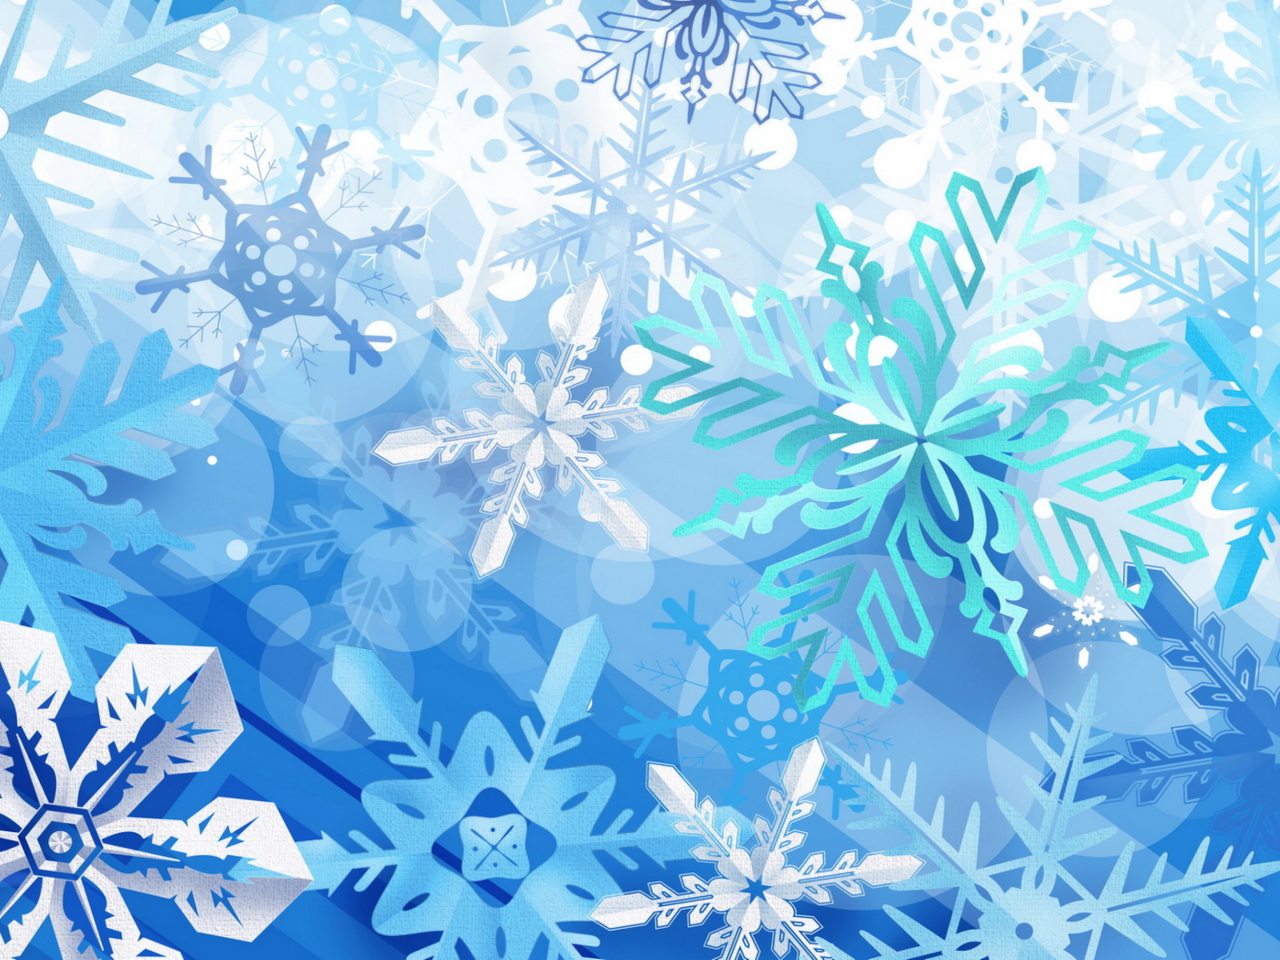 Das Christmas Snowflakes Wallpaper 1280x960